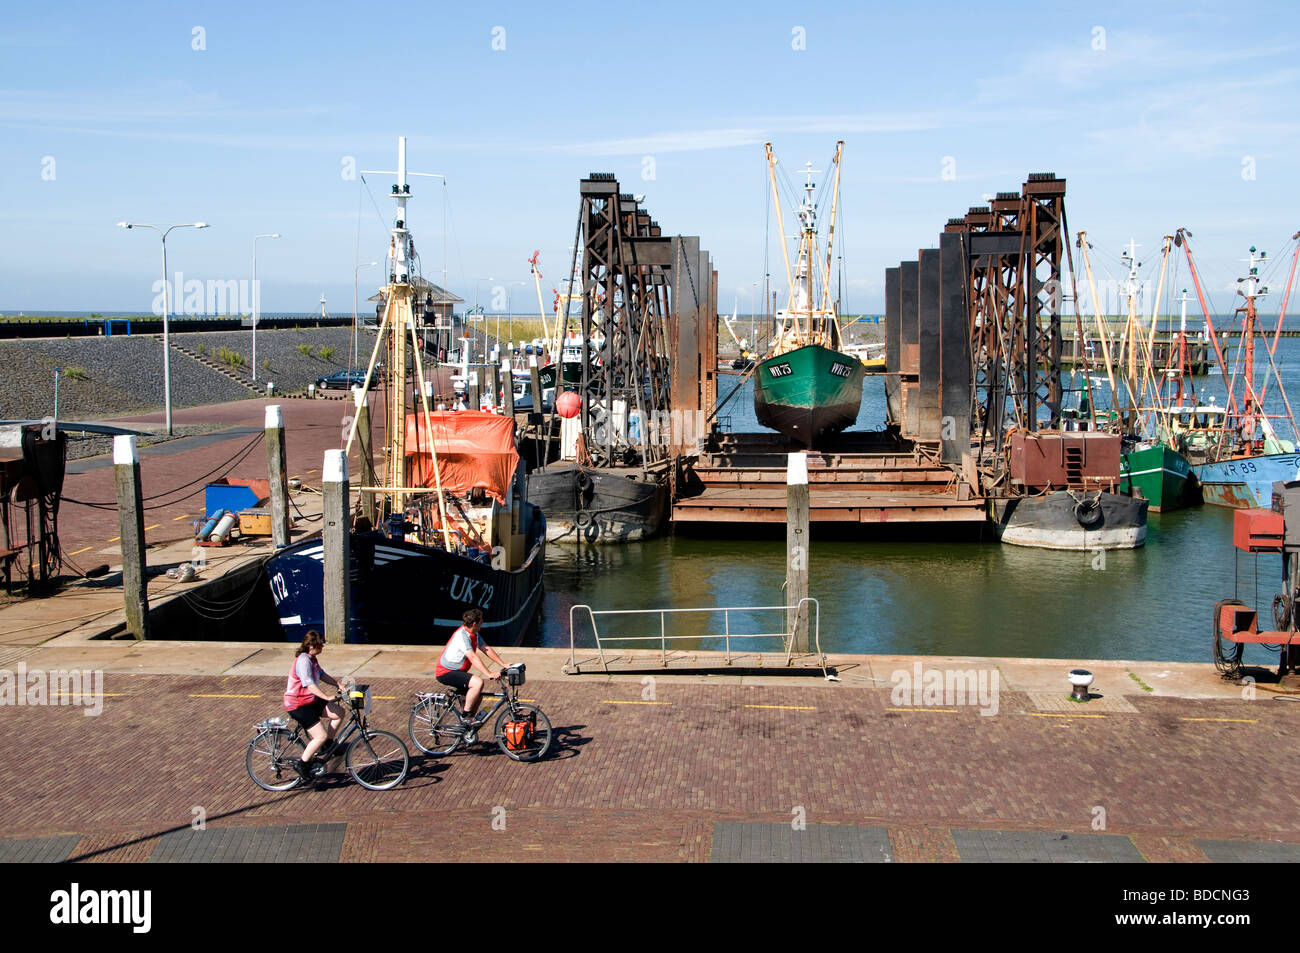 Den Oever Niederlande Fischtrawler schwimmenden Trockendock Werft Hafen Hafen Wadden Sea Wattenmeer Wad Stockfoto